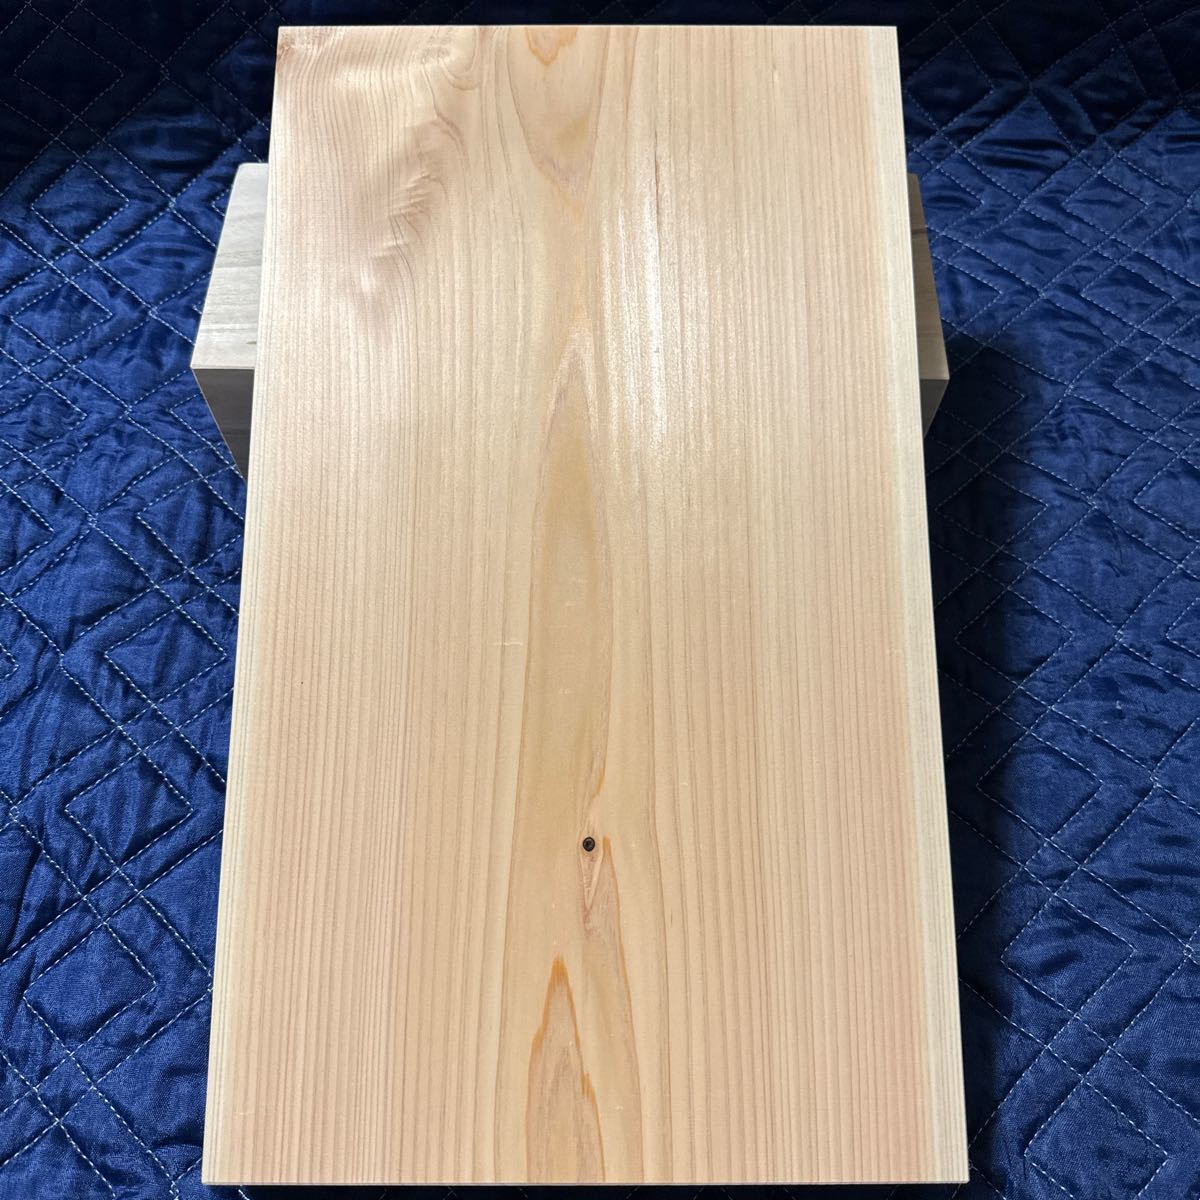 まな板37国産檜材　天然木木材木製ひのき桧カッティングボード業務用天板DIY